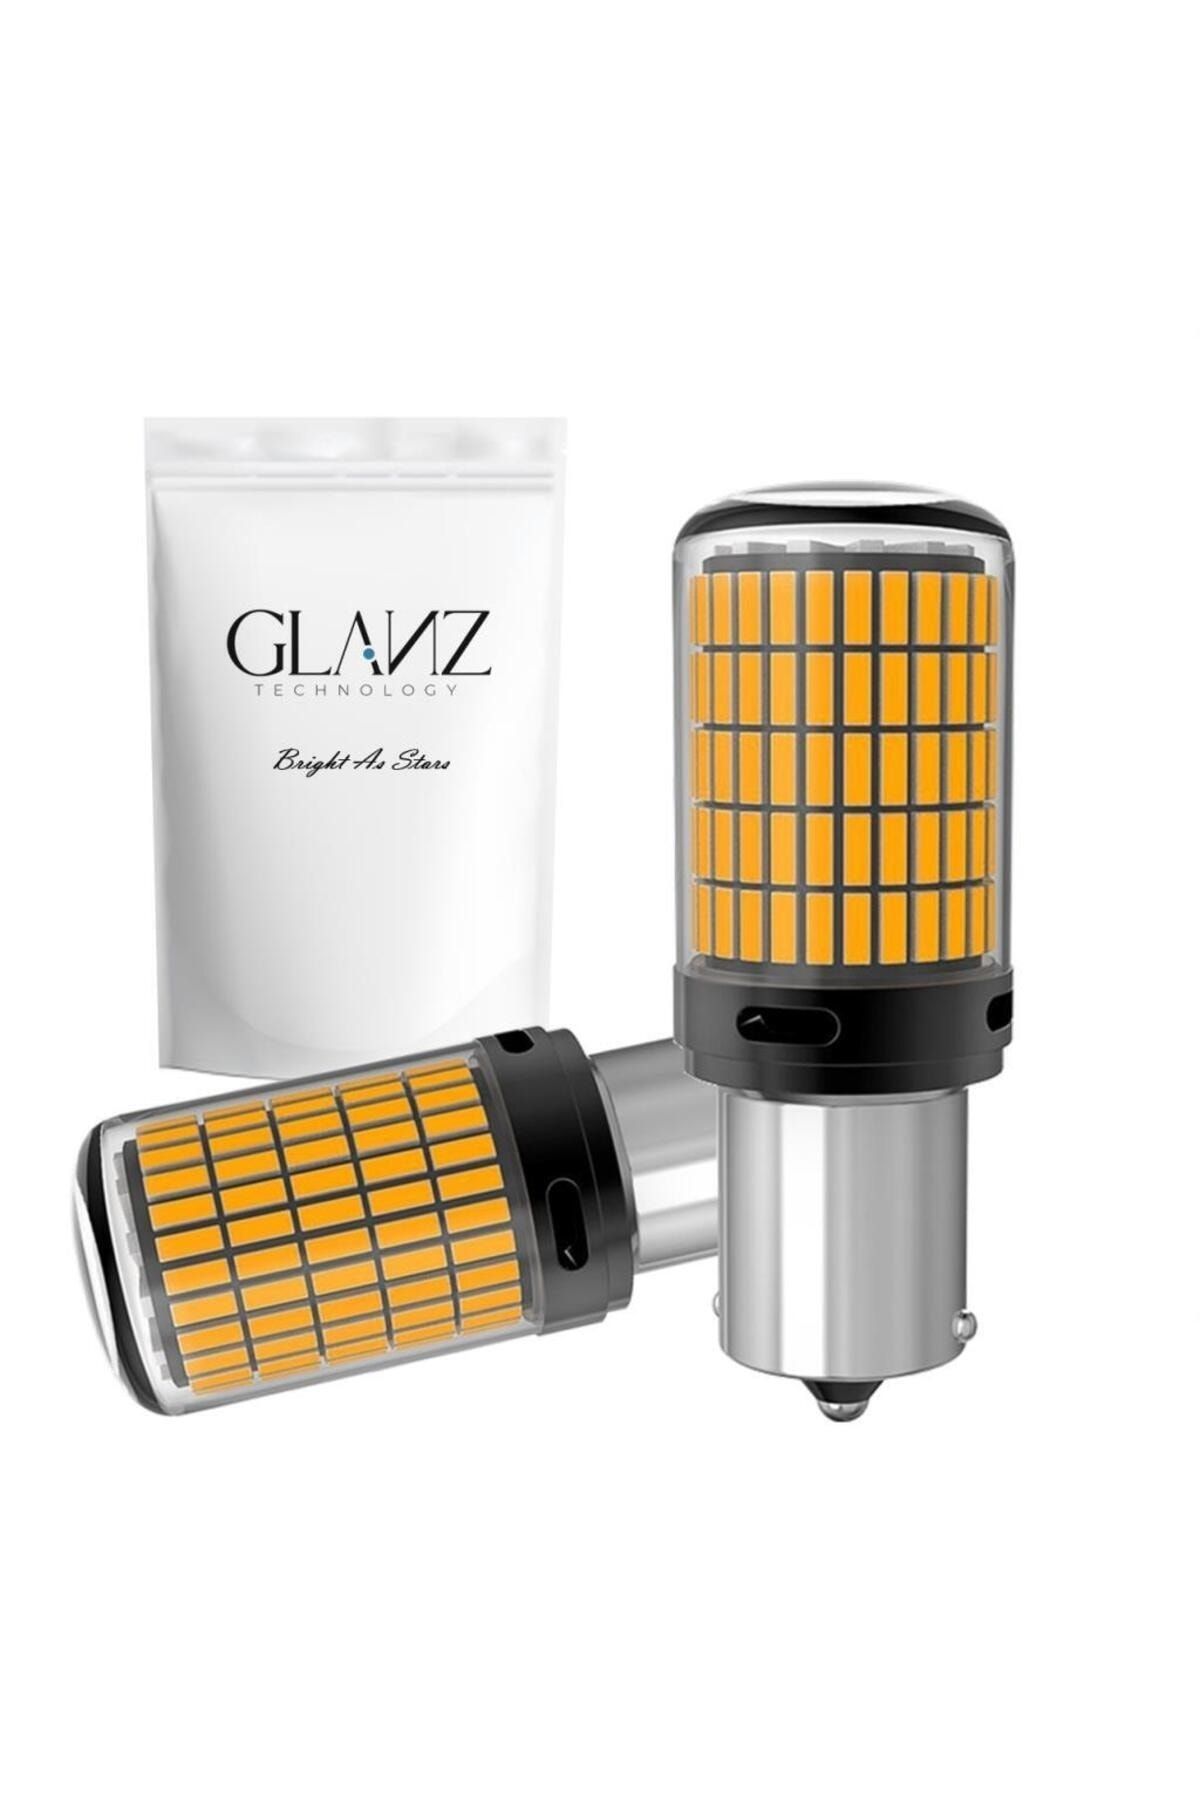 Glanz PY21W Bau15s Turuncu Amber Led Sinyal Ampulü Park Gündüz LambasıTak Kullan Sinyal Ampulü